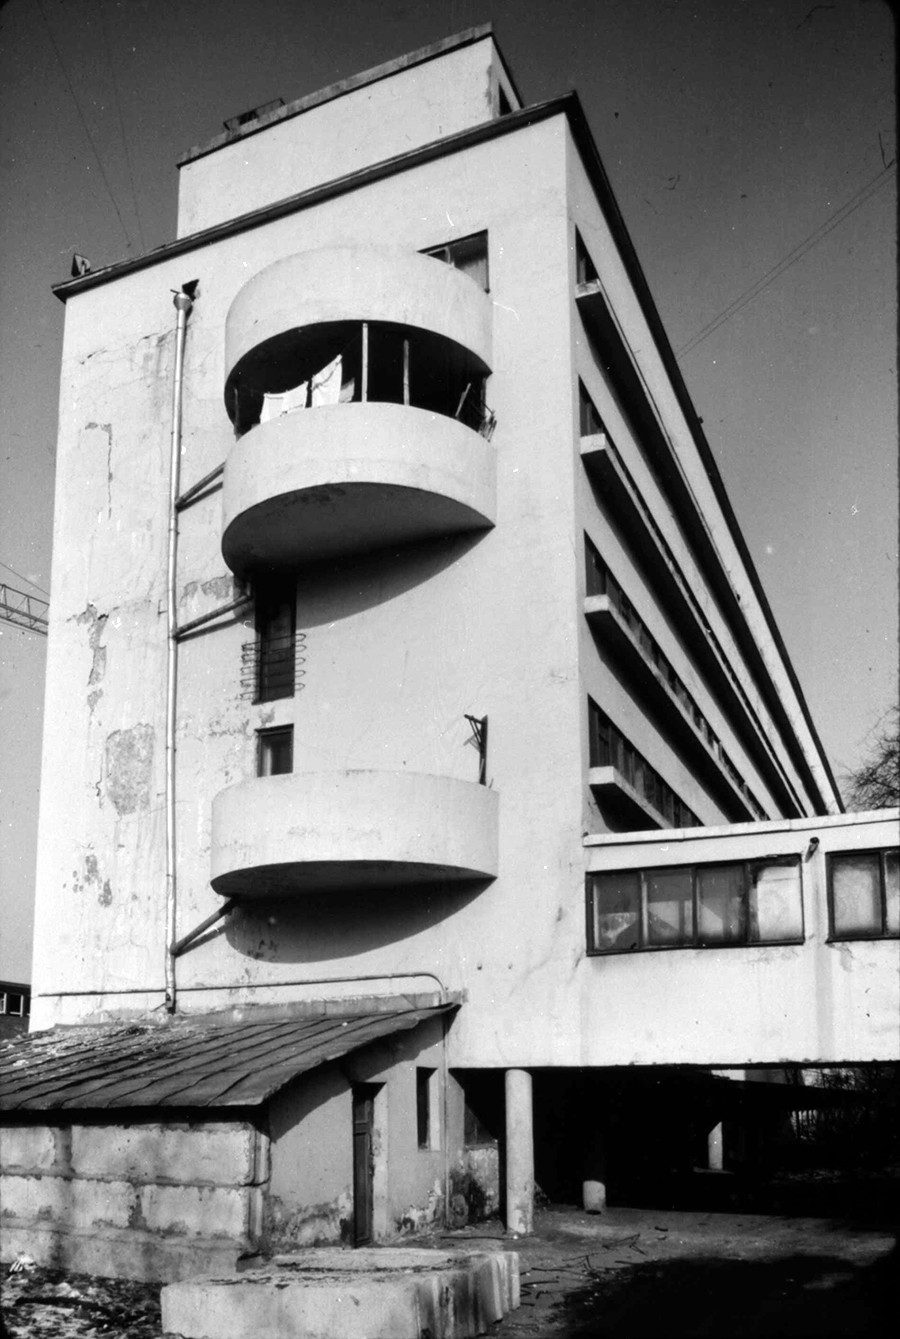 Moskau: Narkomfin-Wohnhaus (1928, Architekten: Moisei Ginzburg und Ignatij Milinis), Foto 1994. Dies ist ein typisches Beispiel für ein Kommunen-Haus für höher gestellte Mitarbeiter einer Institurion, hier des Narkomfin, des Finanzkommissariats.